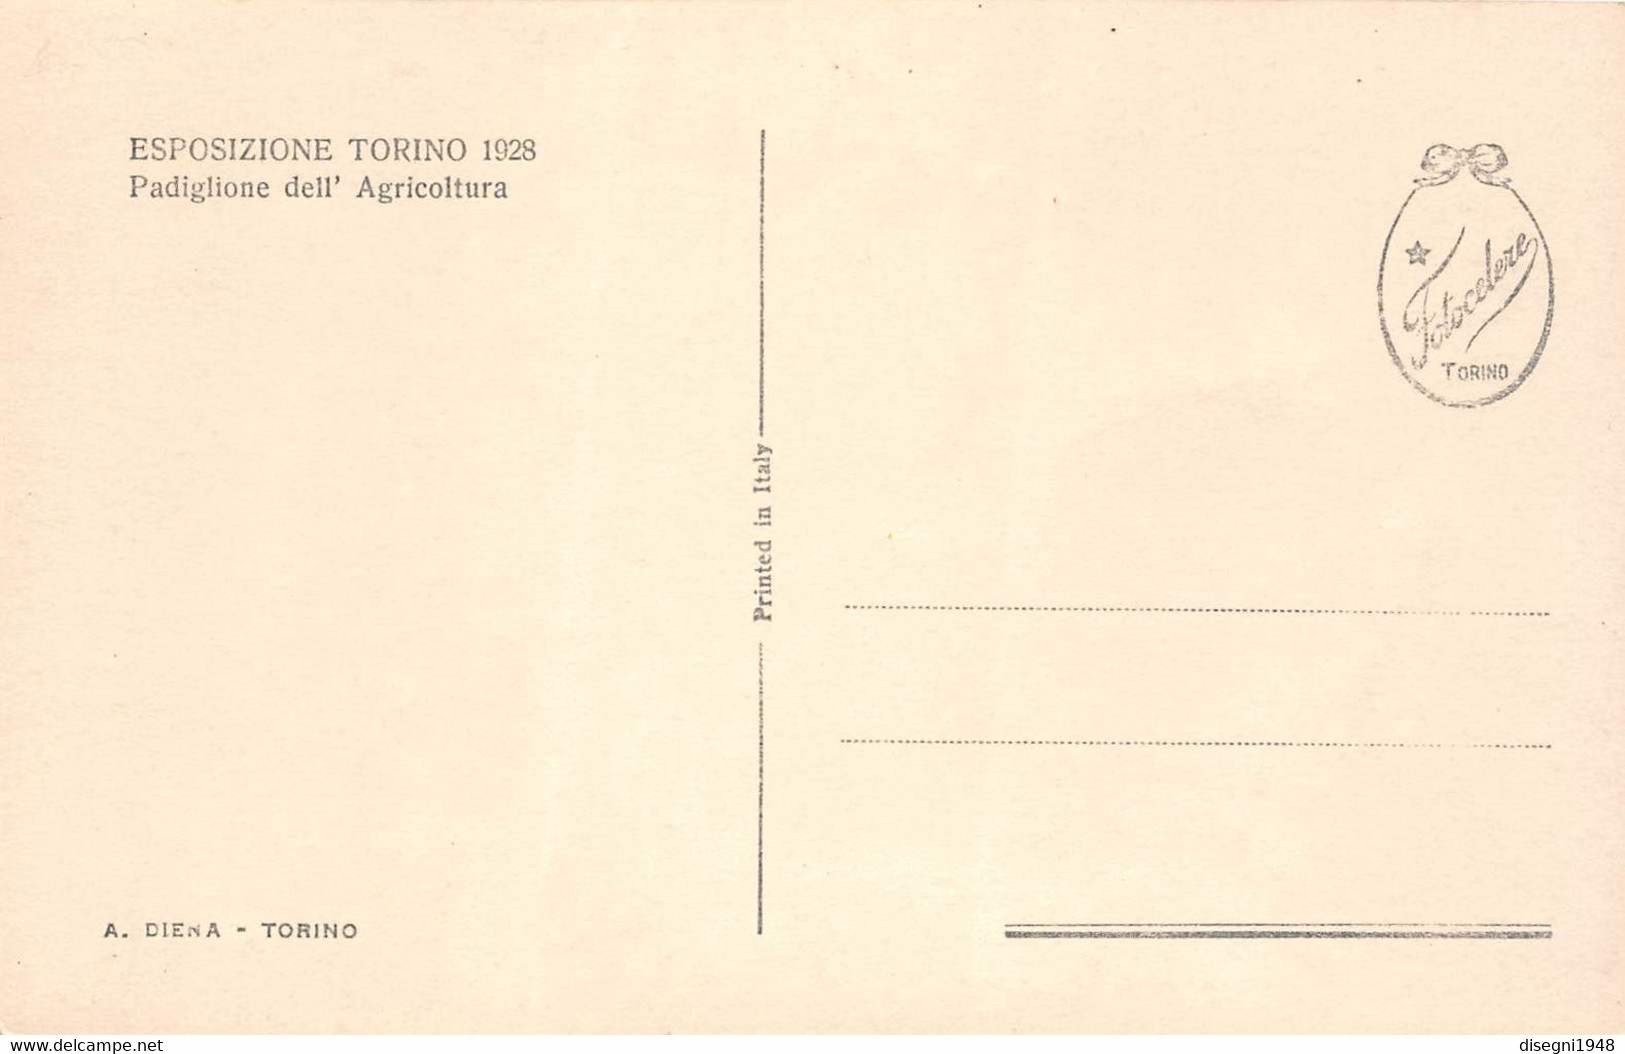 09886 "ESPOSIZIONE TORINO 1928 - PADIGLIONE DELL'AGRICOLTURA" ARCHITETT. DEL '900. ANIMATA.CART. ORIG. NON SPED. - Exposiciones